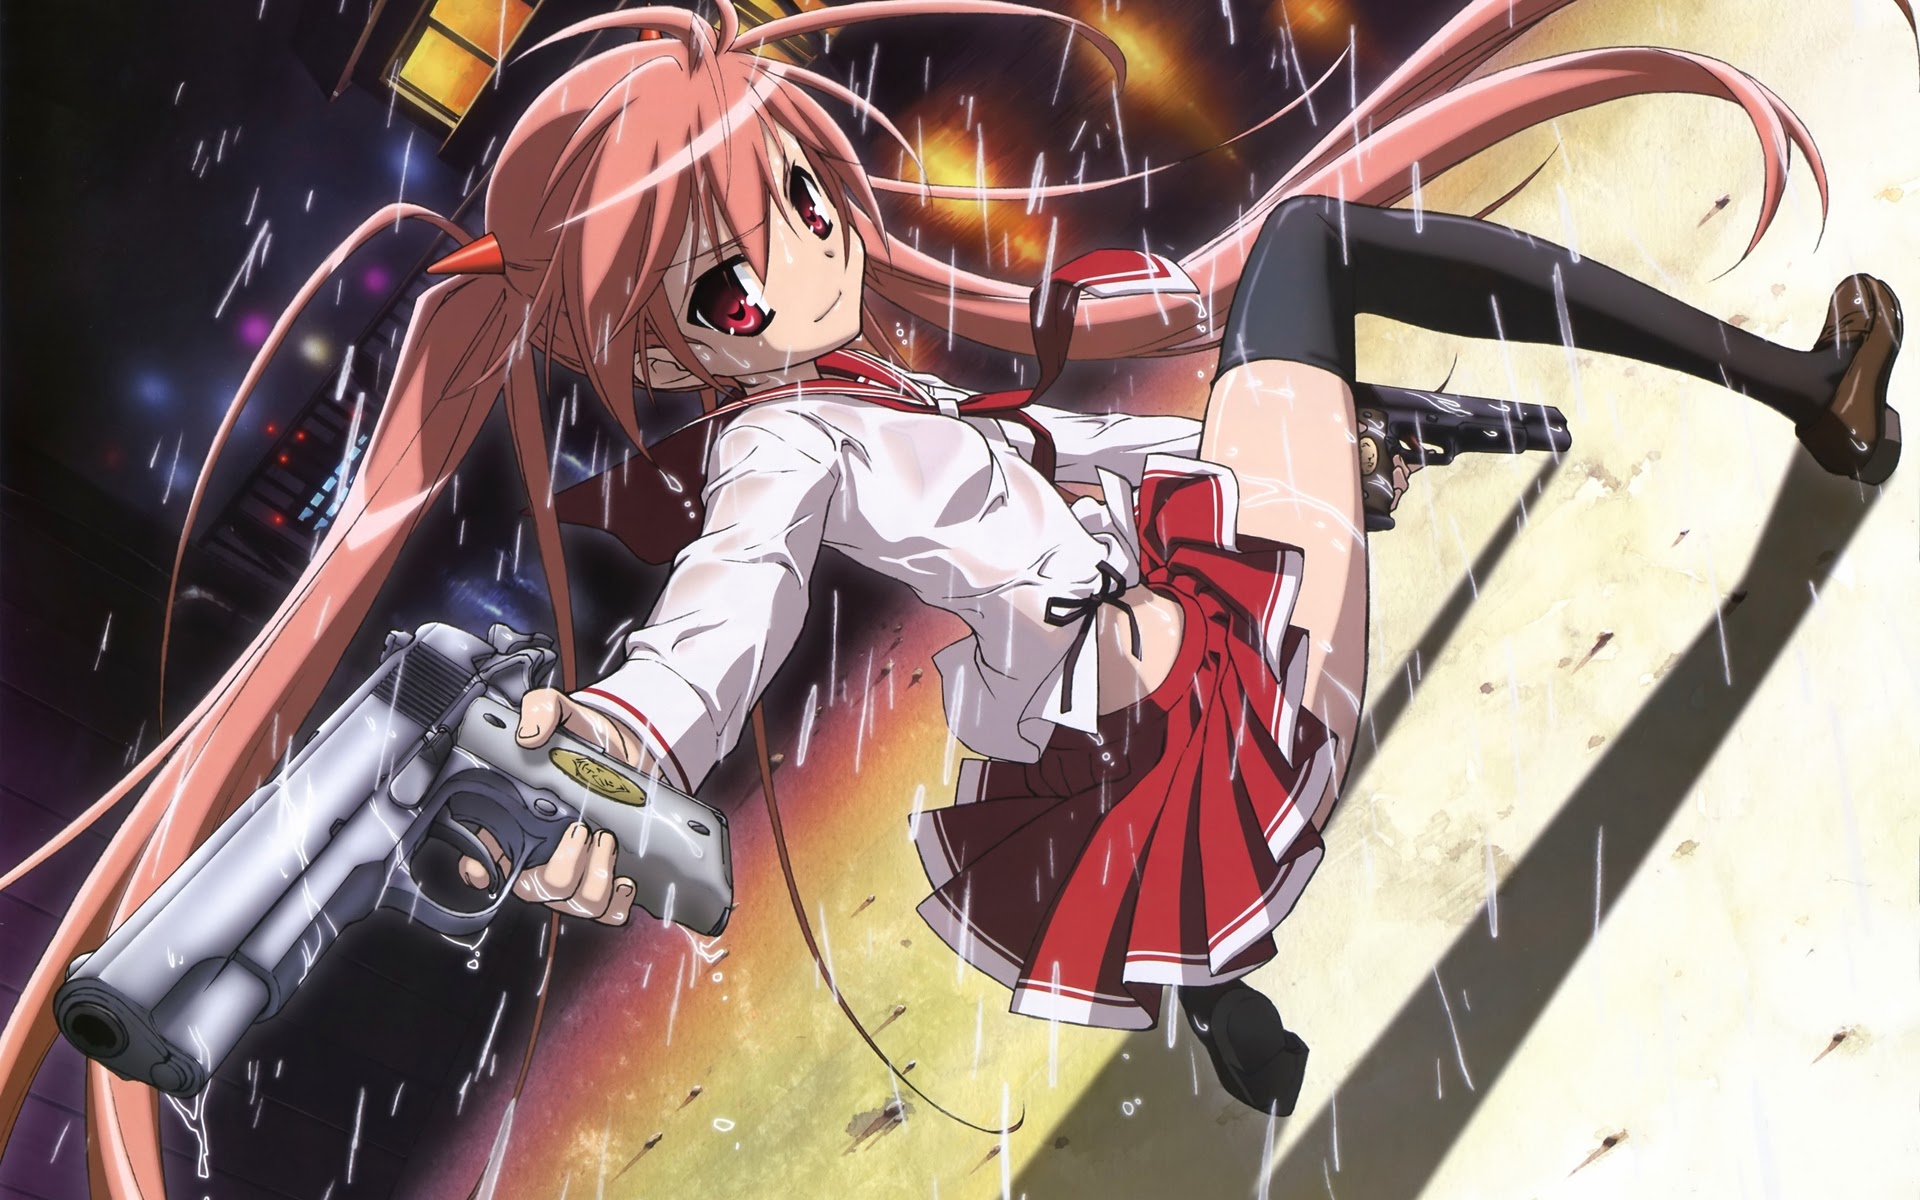 holding Anime gun girl